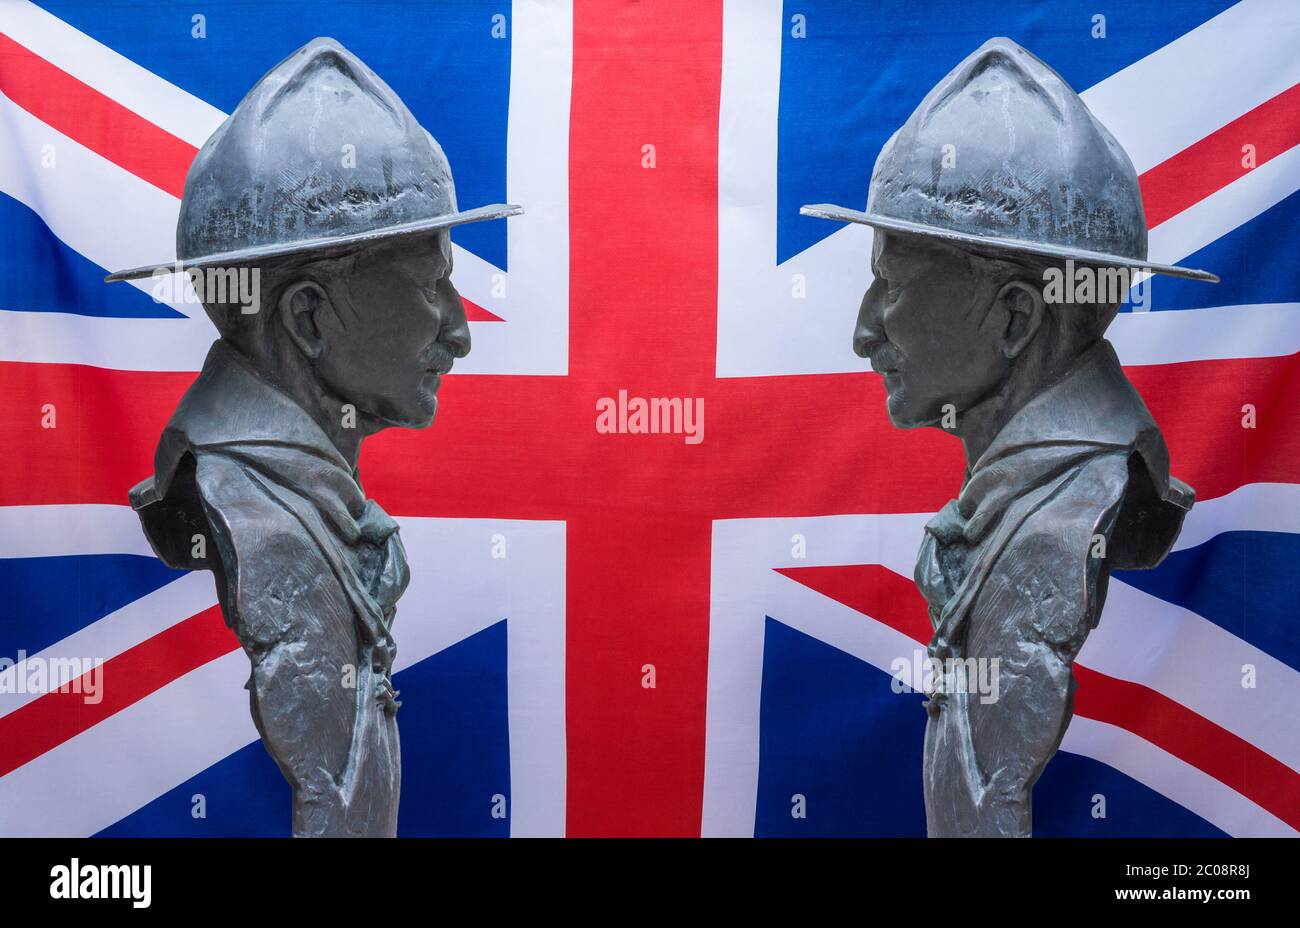 La sculpture de Robert Baden Powell a joué sur le drapeau britannique Union Jack. Banque D'Images